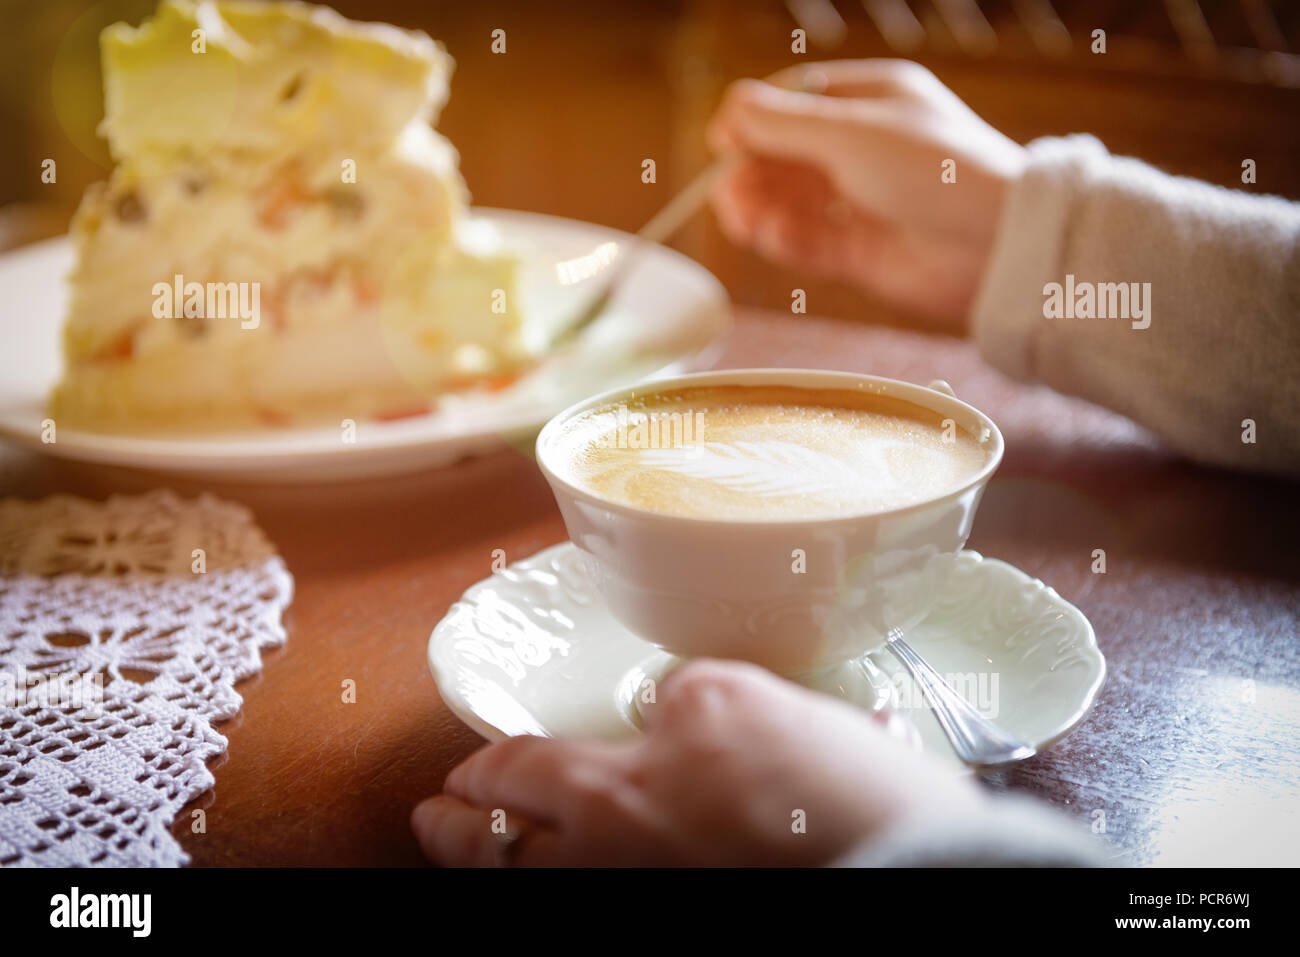 Image authentique de woman's hand holding cappuccino, gâteau à la meringue à l'arrière-plan Banque D'Images